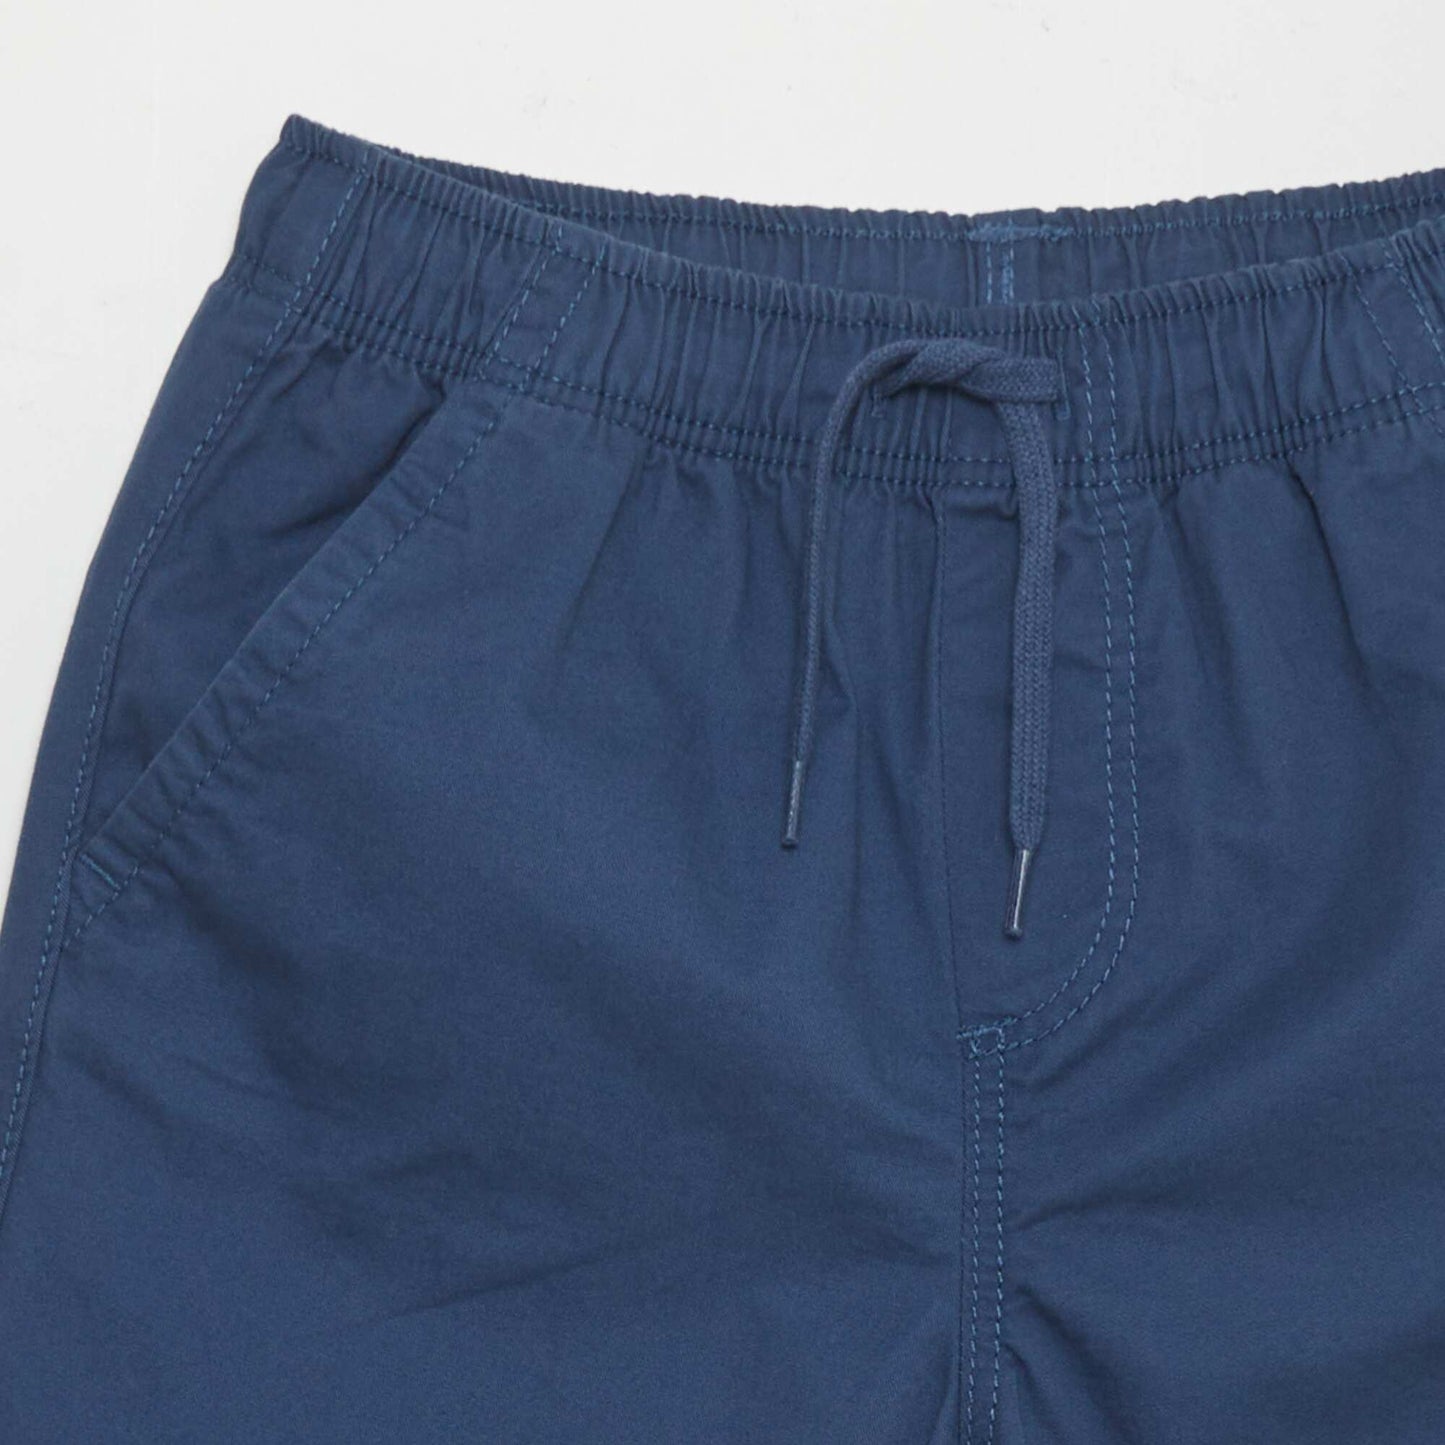 Plain Bermuda shorts BLUE